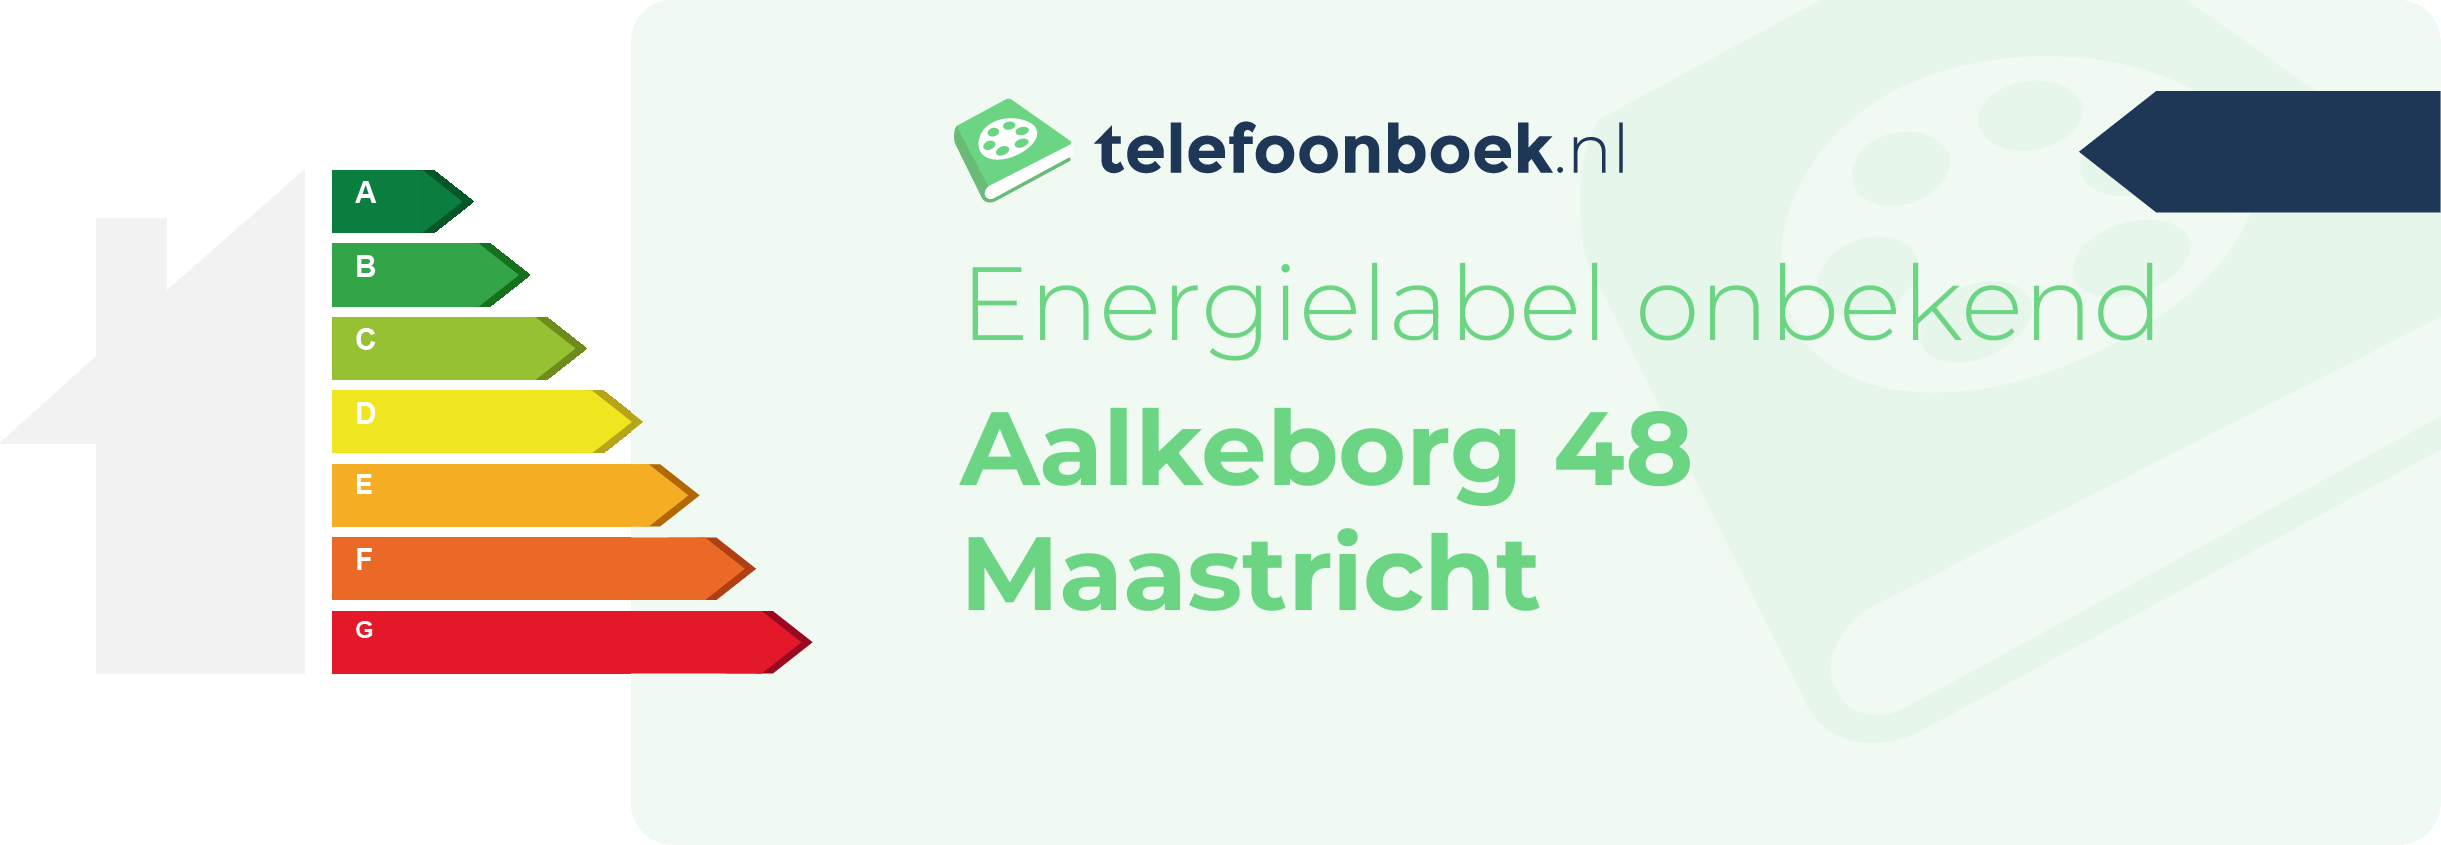 Energielabel Aalkeborg 48 Maastricht